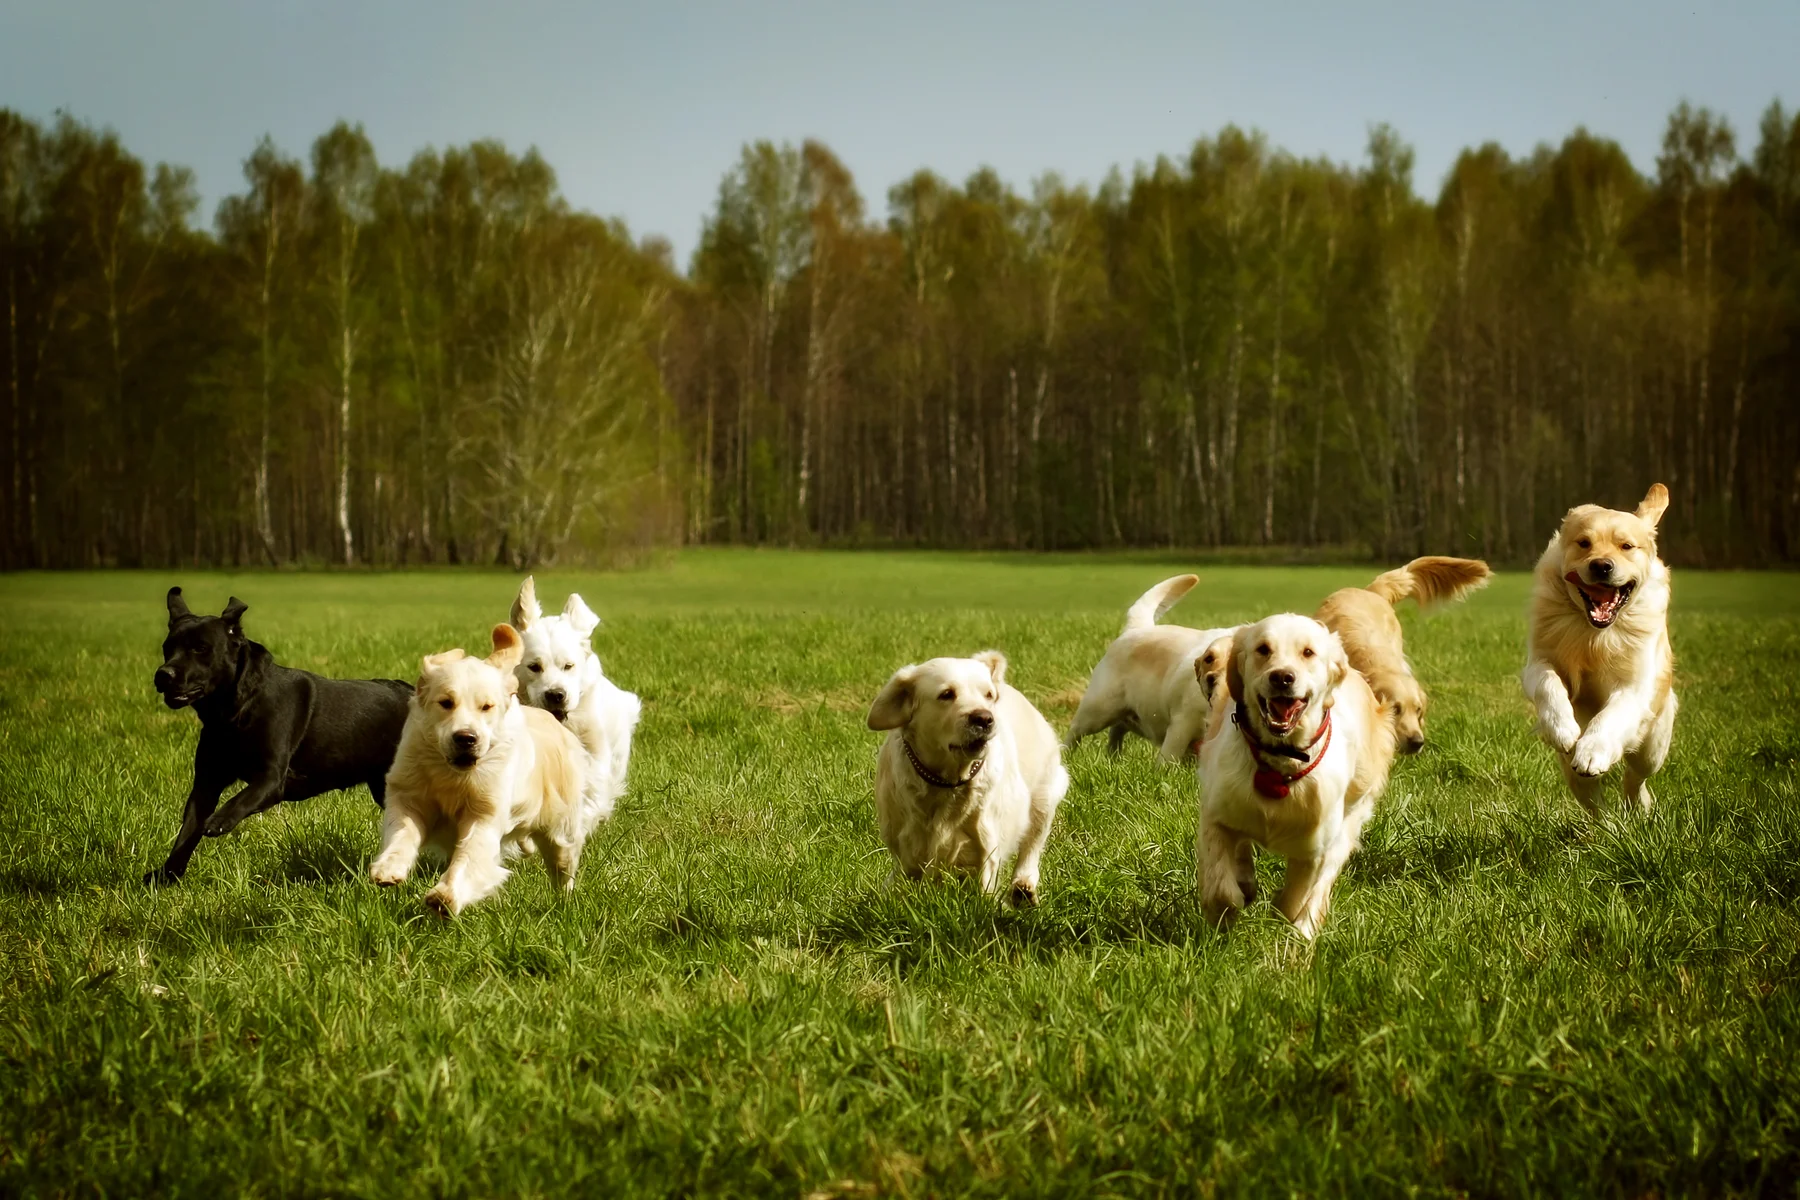 Eine fröhliche Gruppe verschiedenfarbiger Hunde, darunter ein schwarzer Labrador und mehrere Golden Retriever, rennt durch eine grüne Wiese vor einem Waldhintergrund.